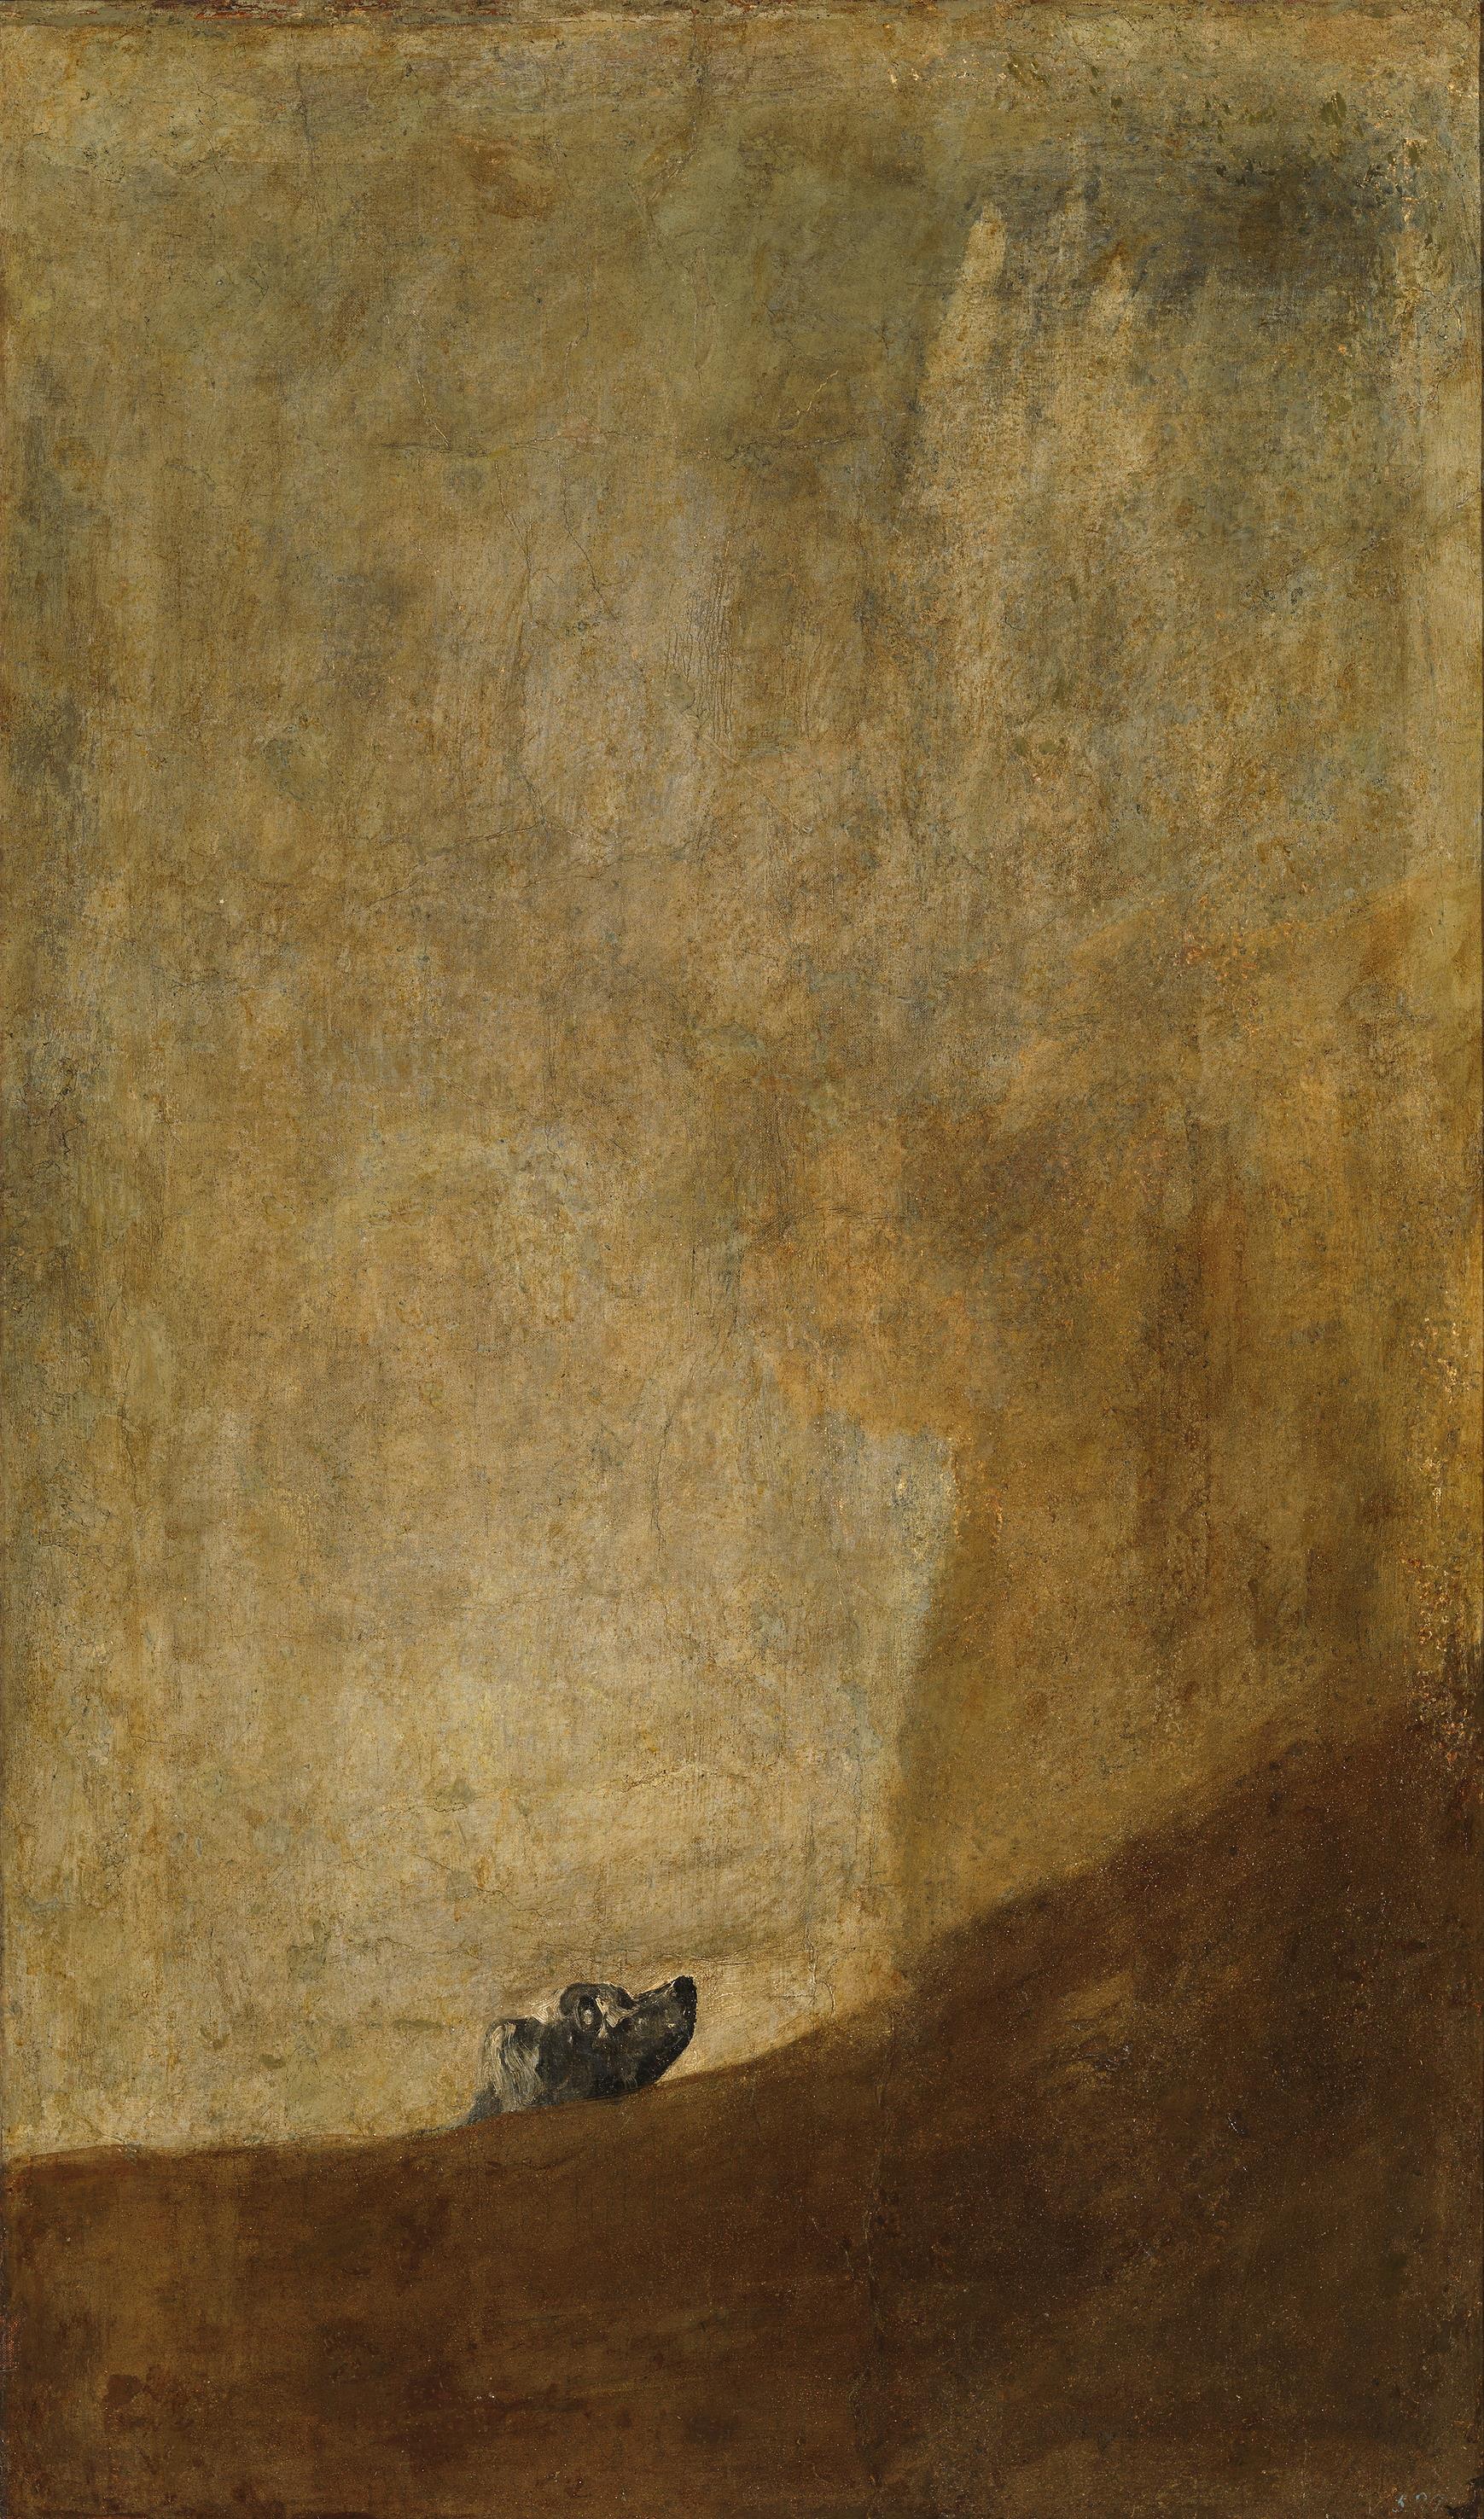 Der Hund by Francisco Goya - ca. 1819-1823 - 13,5 cm × 79,3 cm Museo del Prado